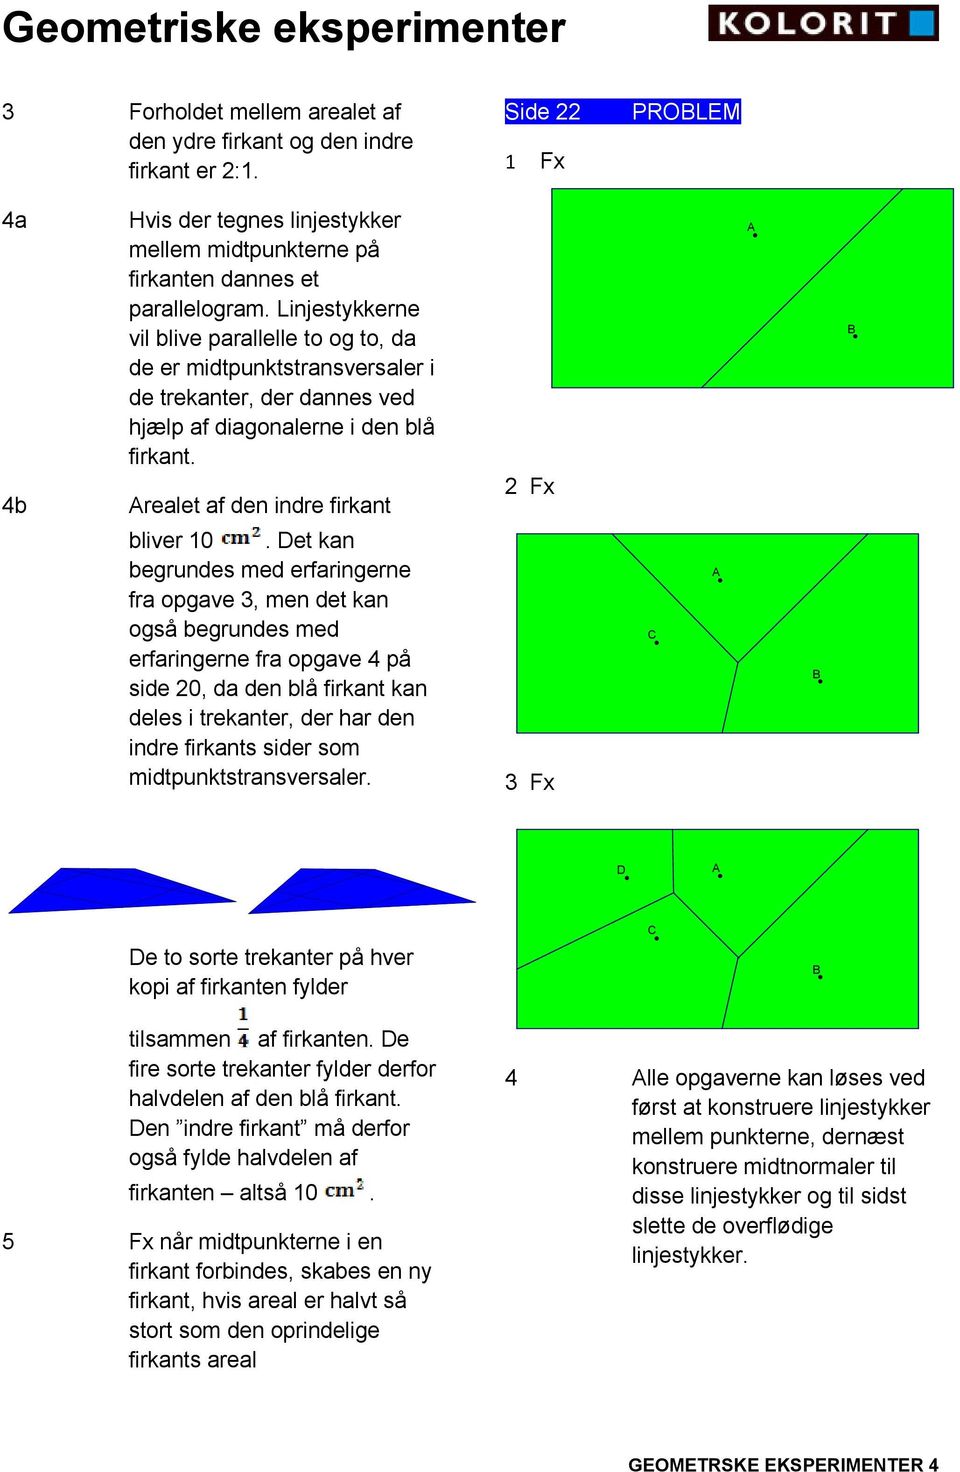 et kan begrundes med erfaringerne fra opgave 3, men det kan også begrundes med erfaringerne fra opgave 4 på side 20, da den blå firkant kan deles i trekanter, der har den indre firkants sider som